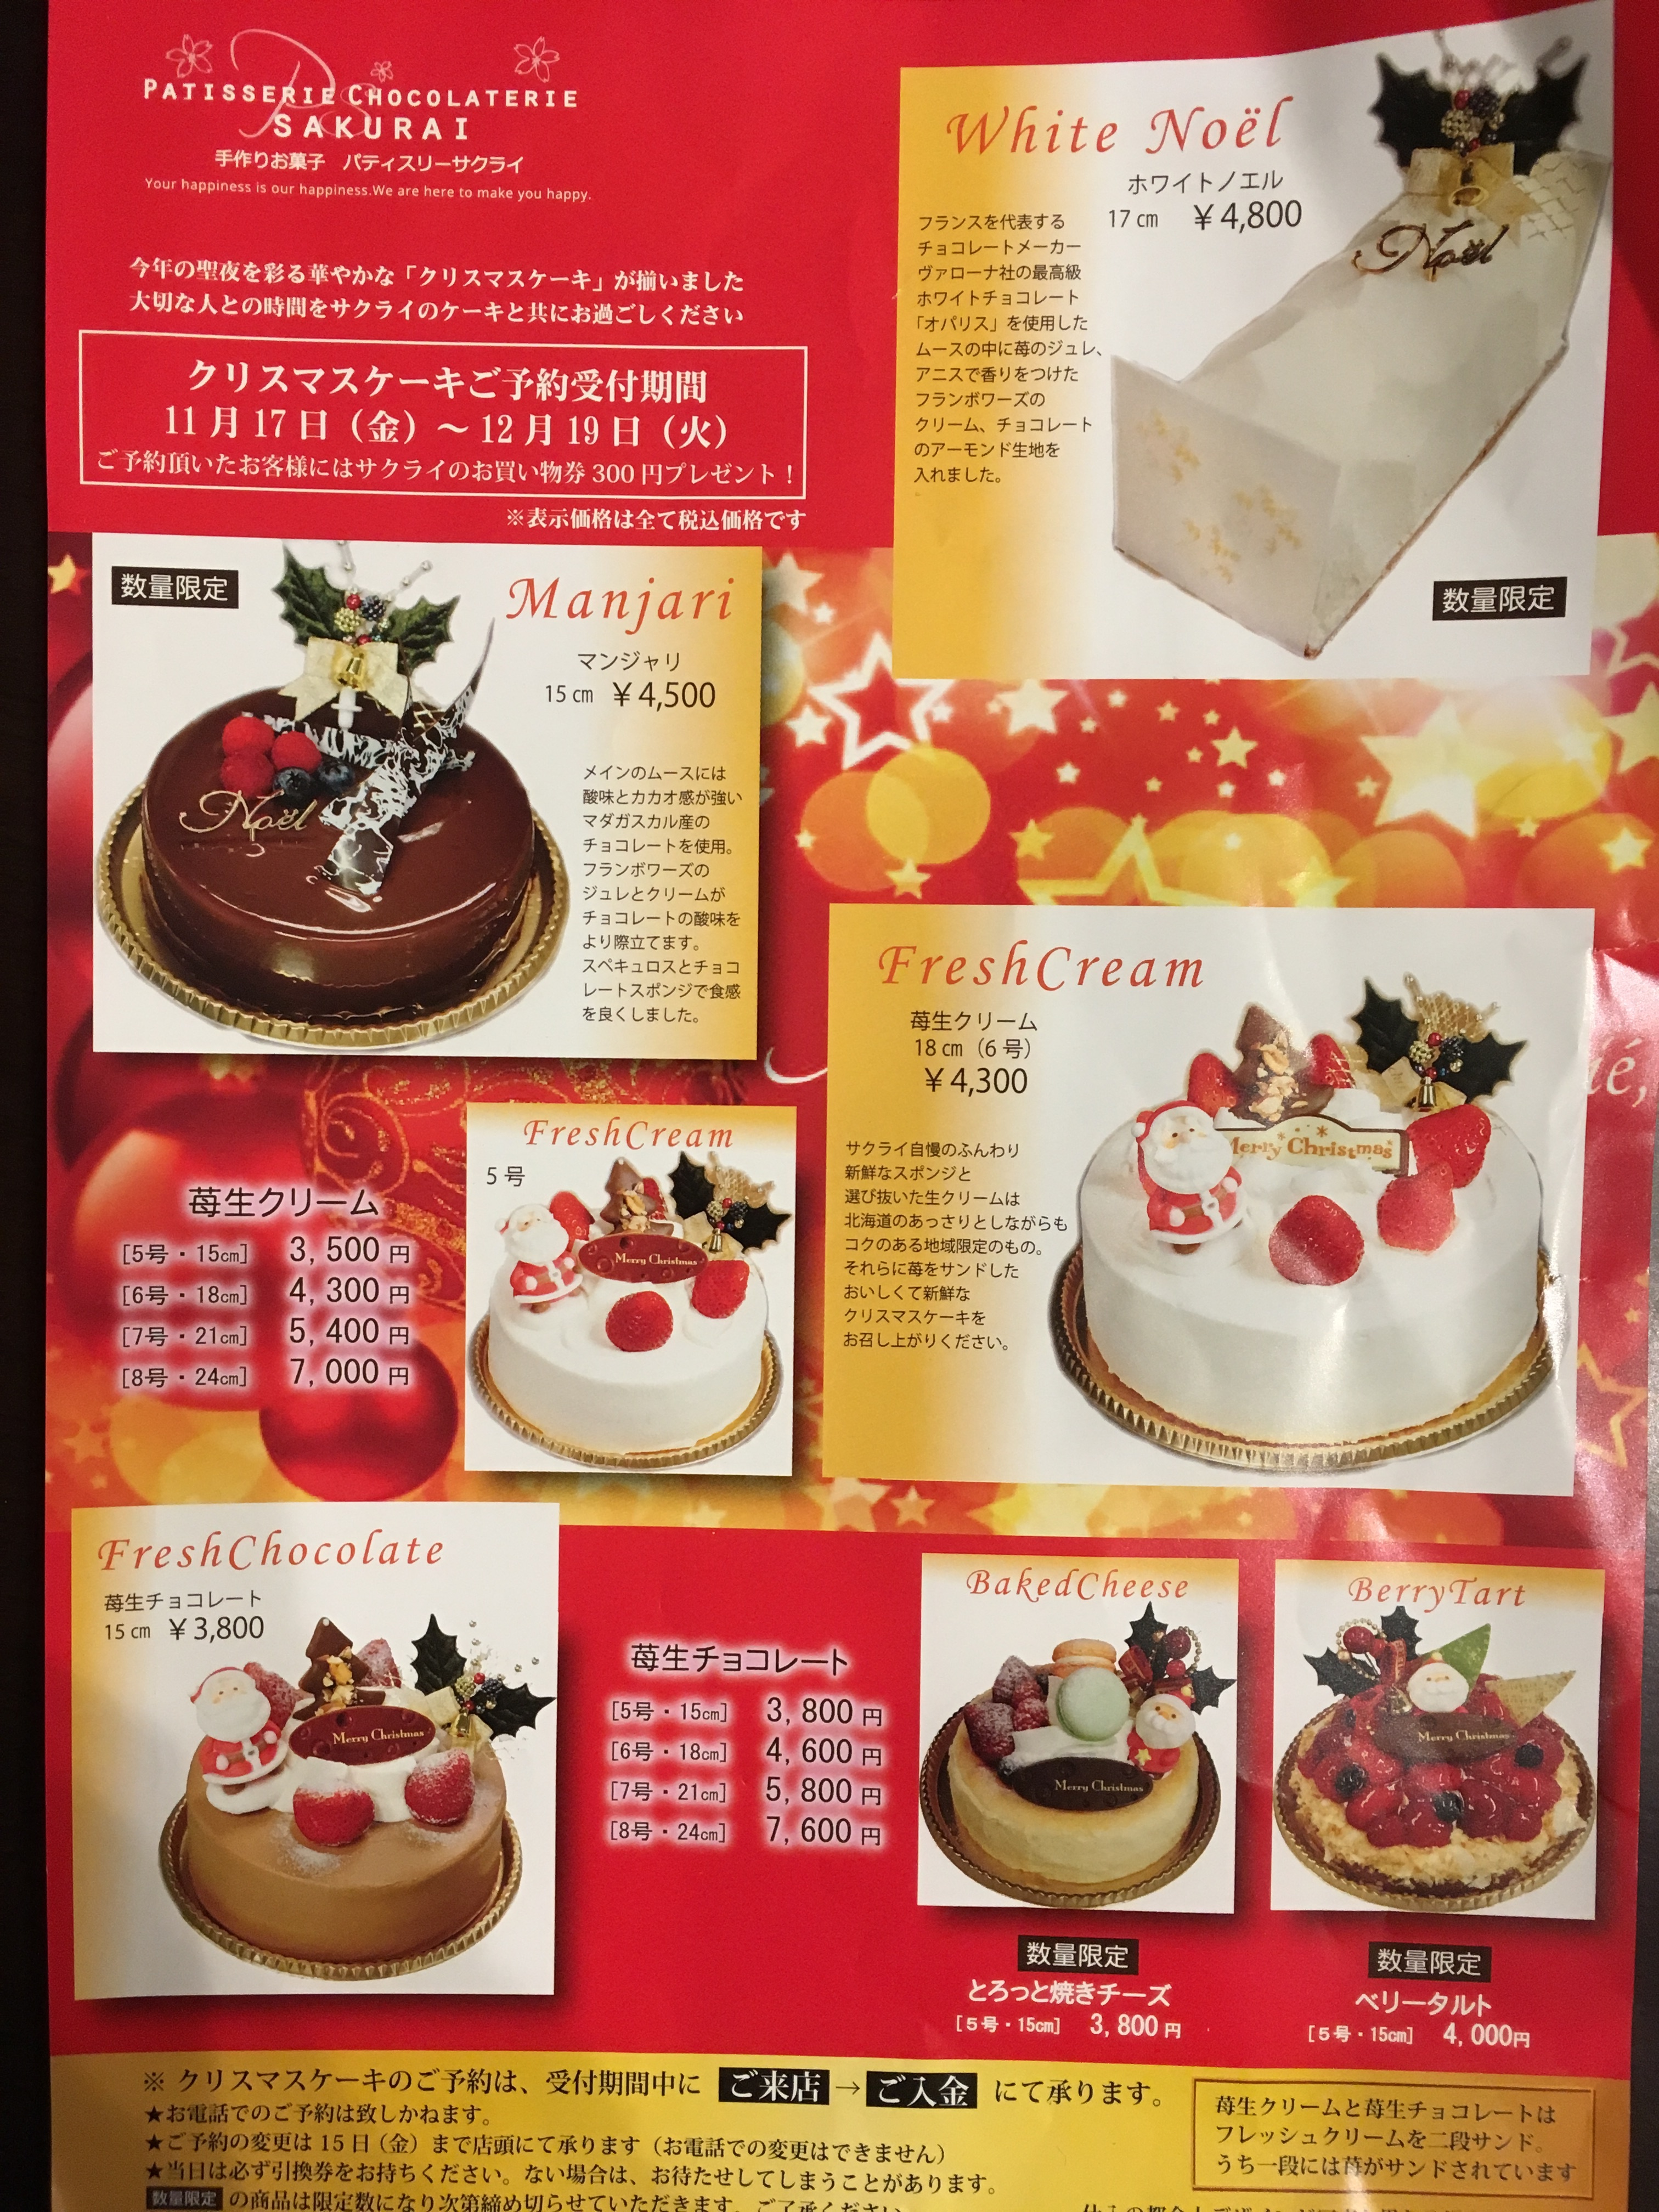 17年クリスマスケーキ比較in富山県 富山県のママ向け情報